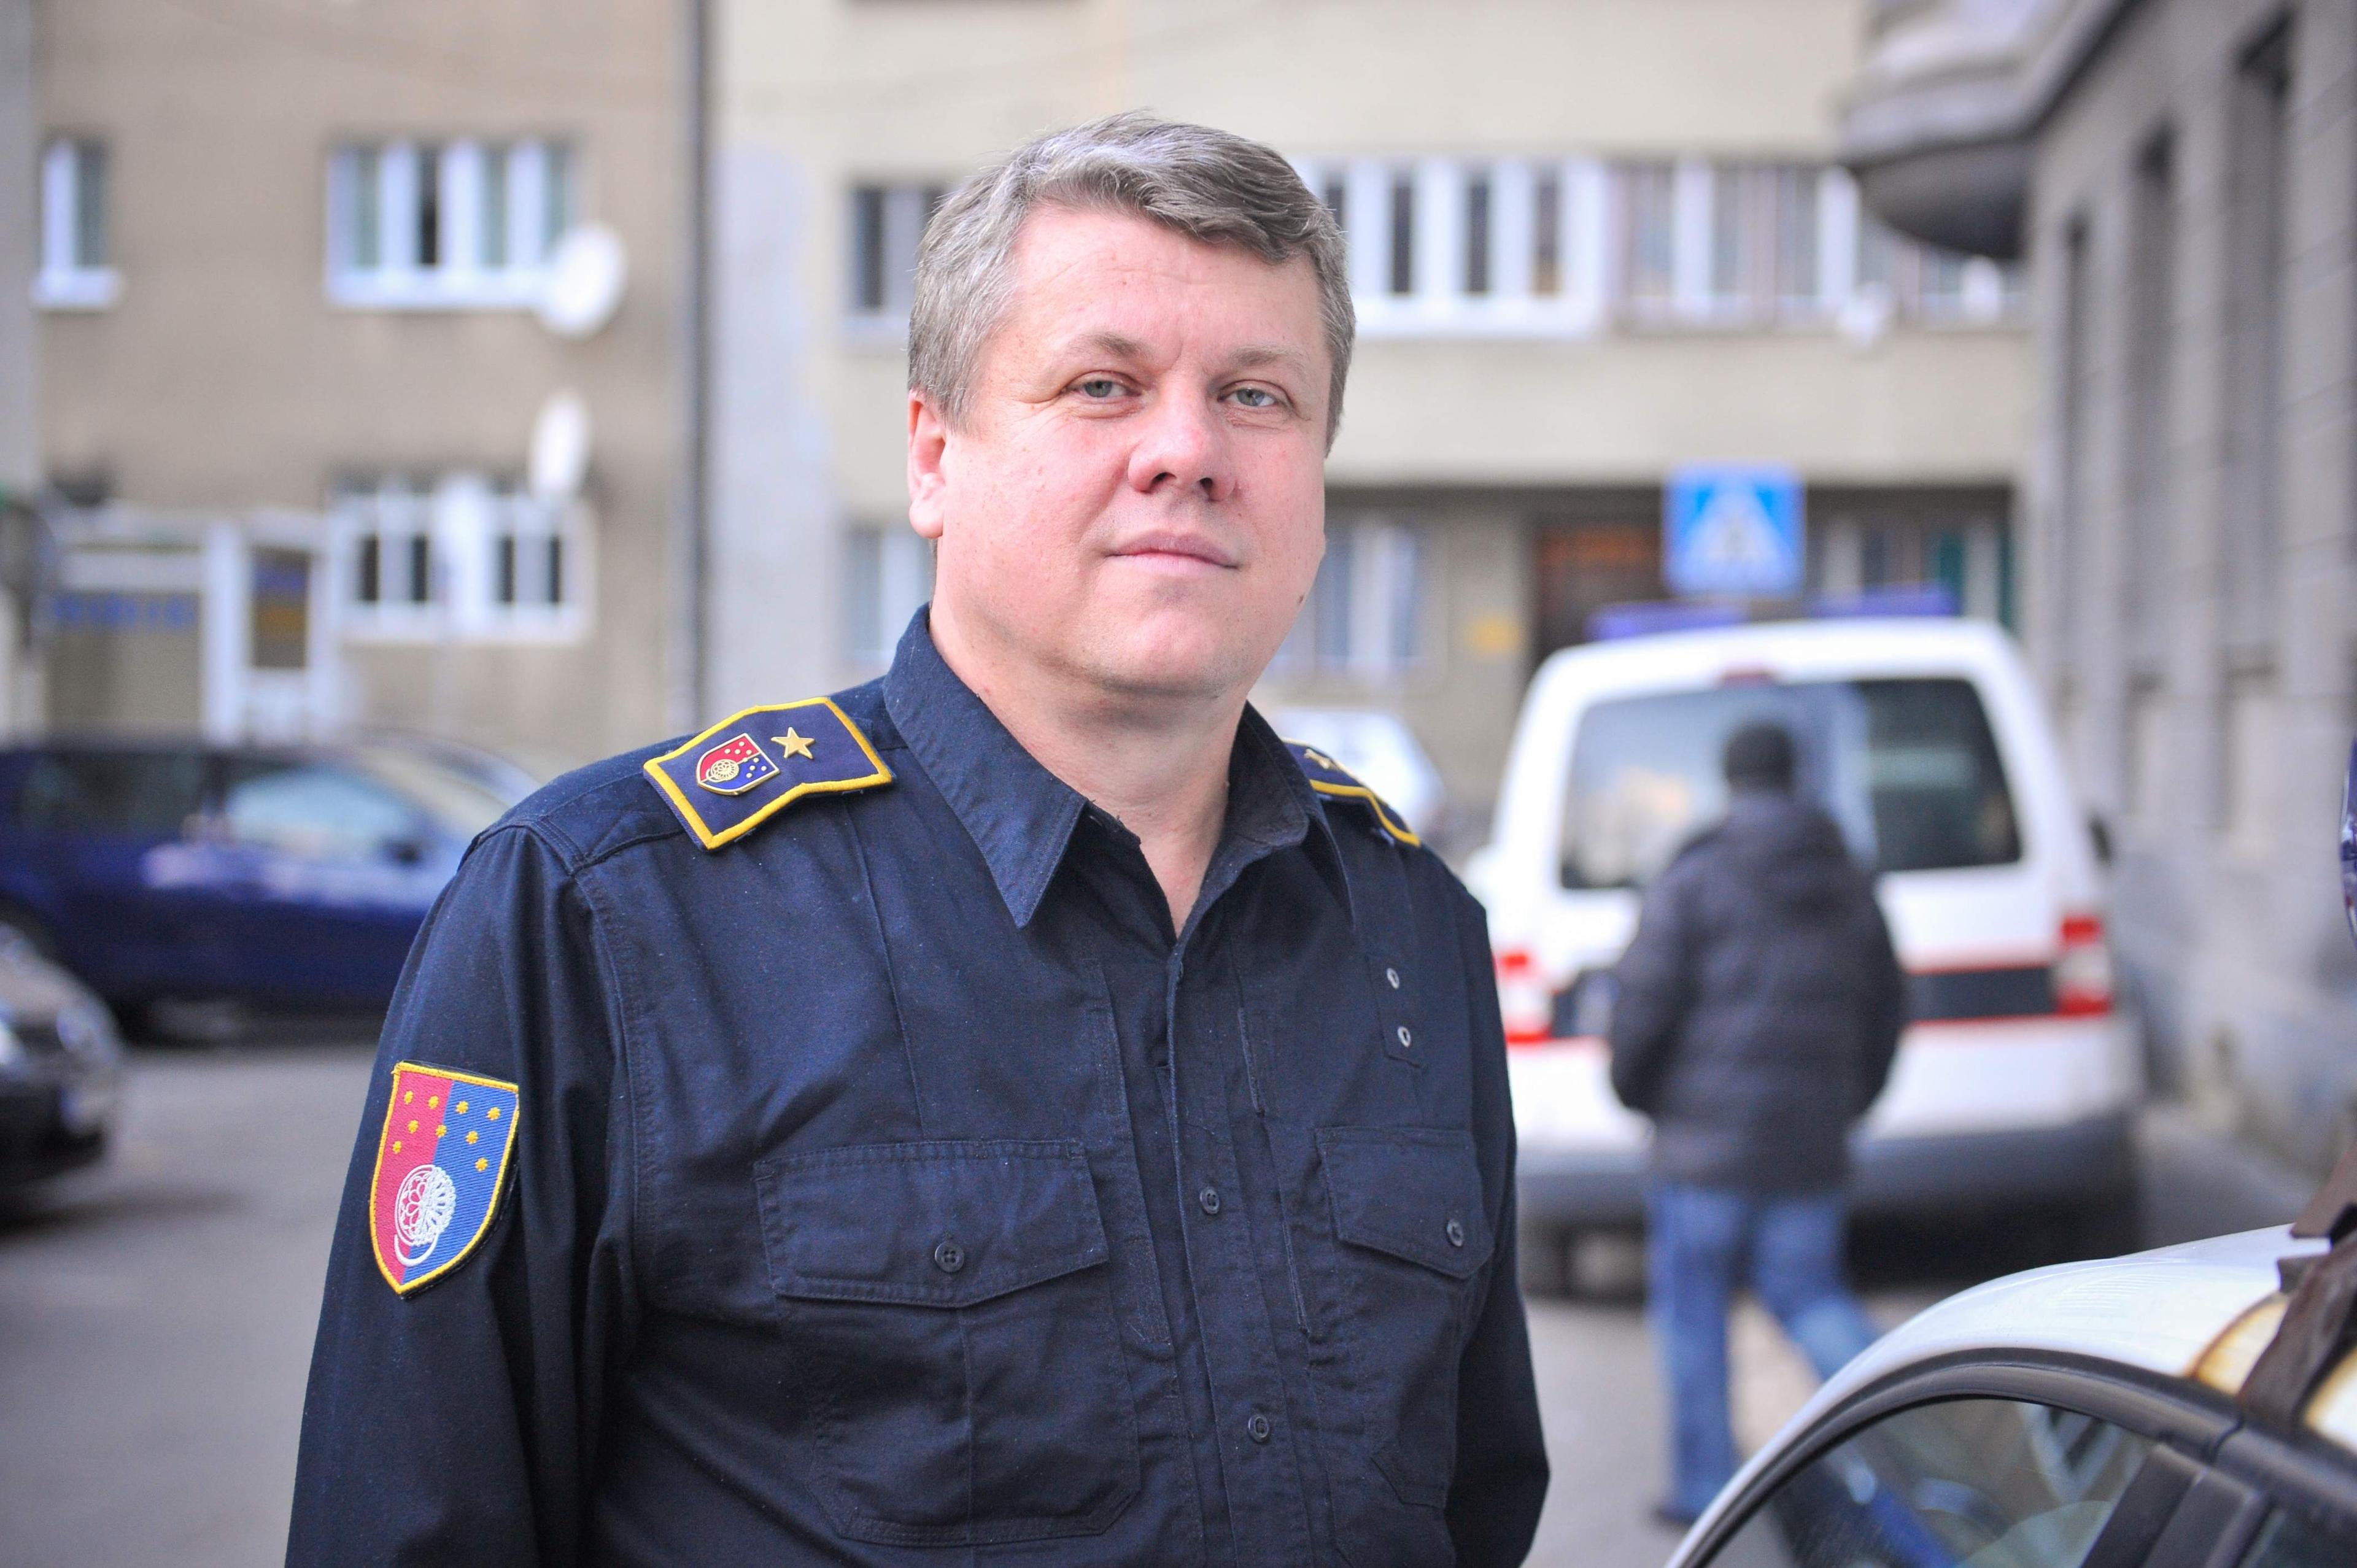 Bezrezervna podrška policijskom komesaru Mevludinu Haliloviću - Avaz